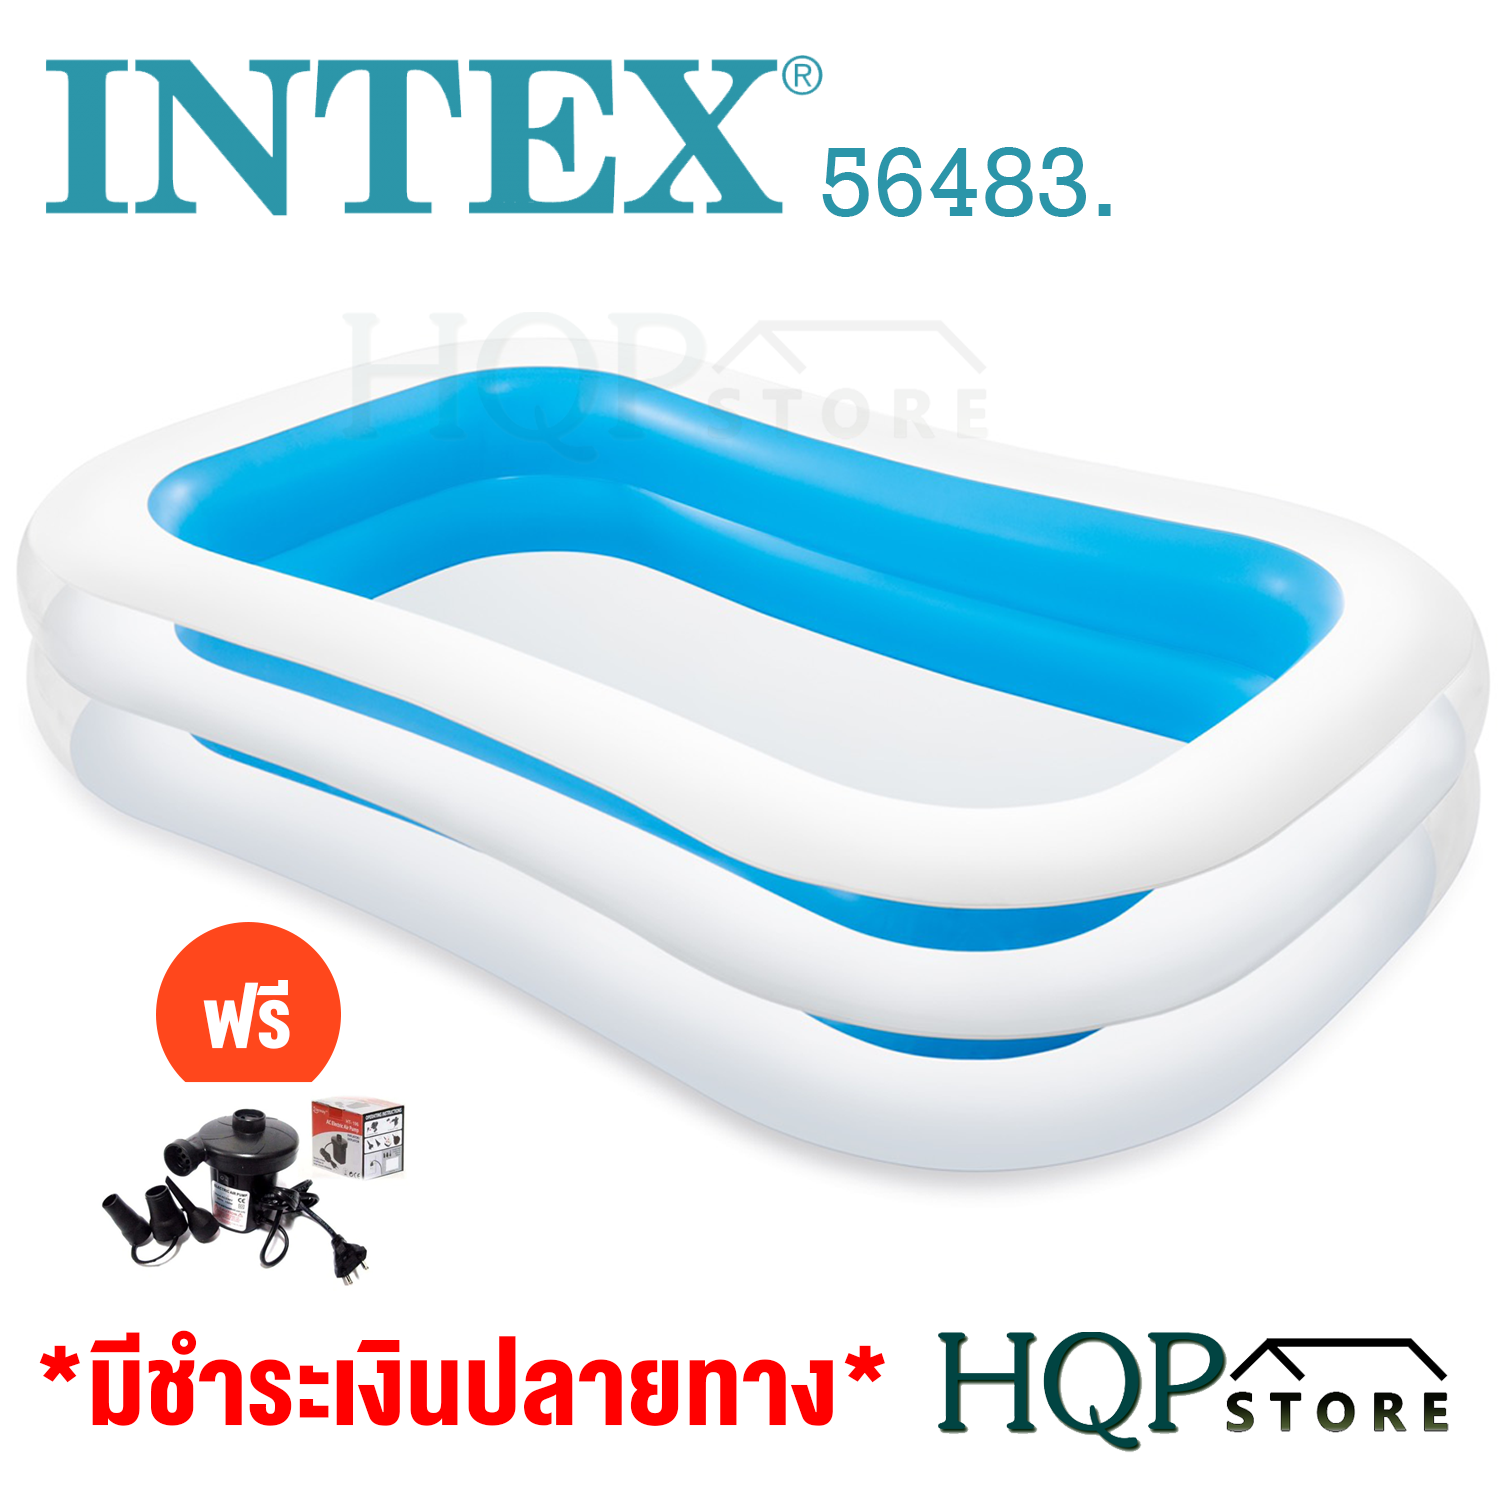 Intex 56483 สระน้ำเป่าลม ขนาด 262x175x56 cm  (สีฟ้า/ขาว)   แถมฟรีที่เป่าลมไฟฟ้า